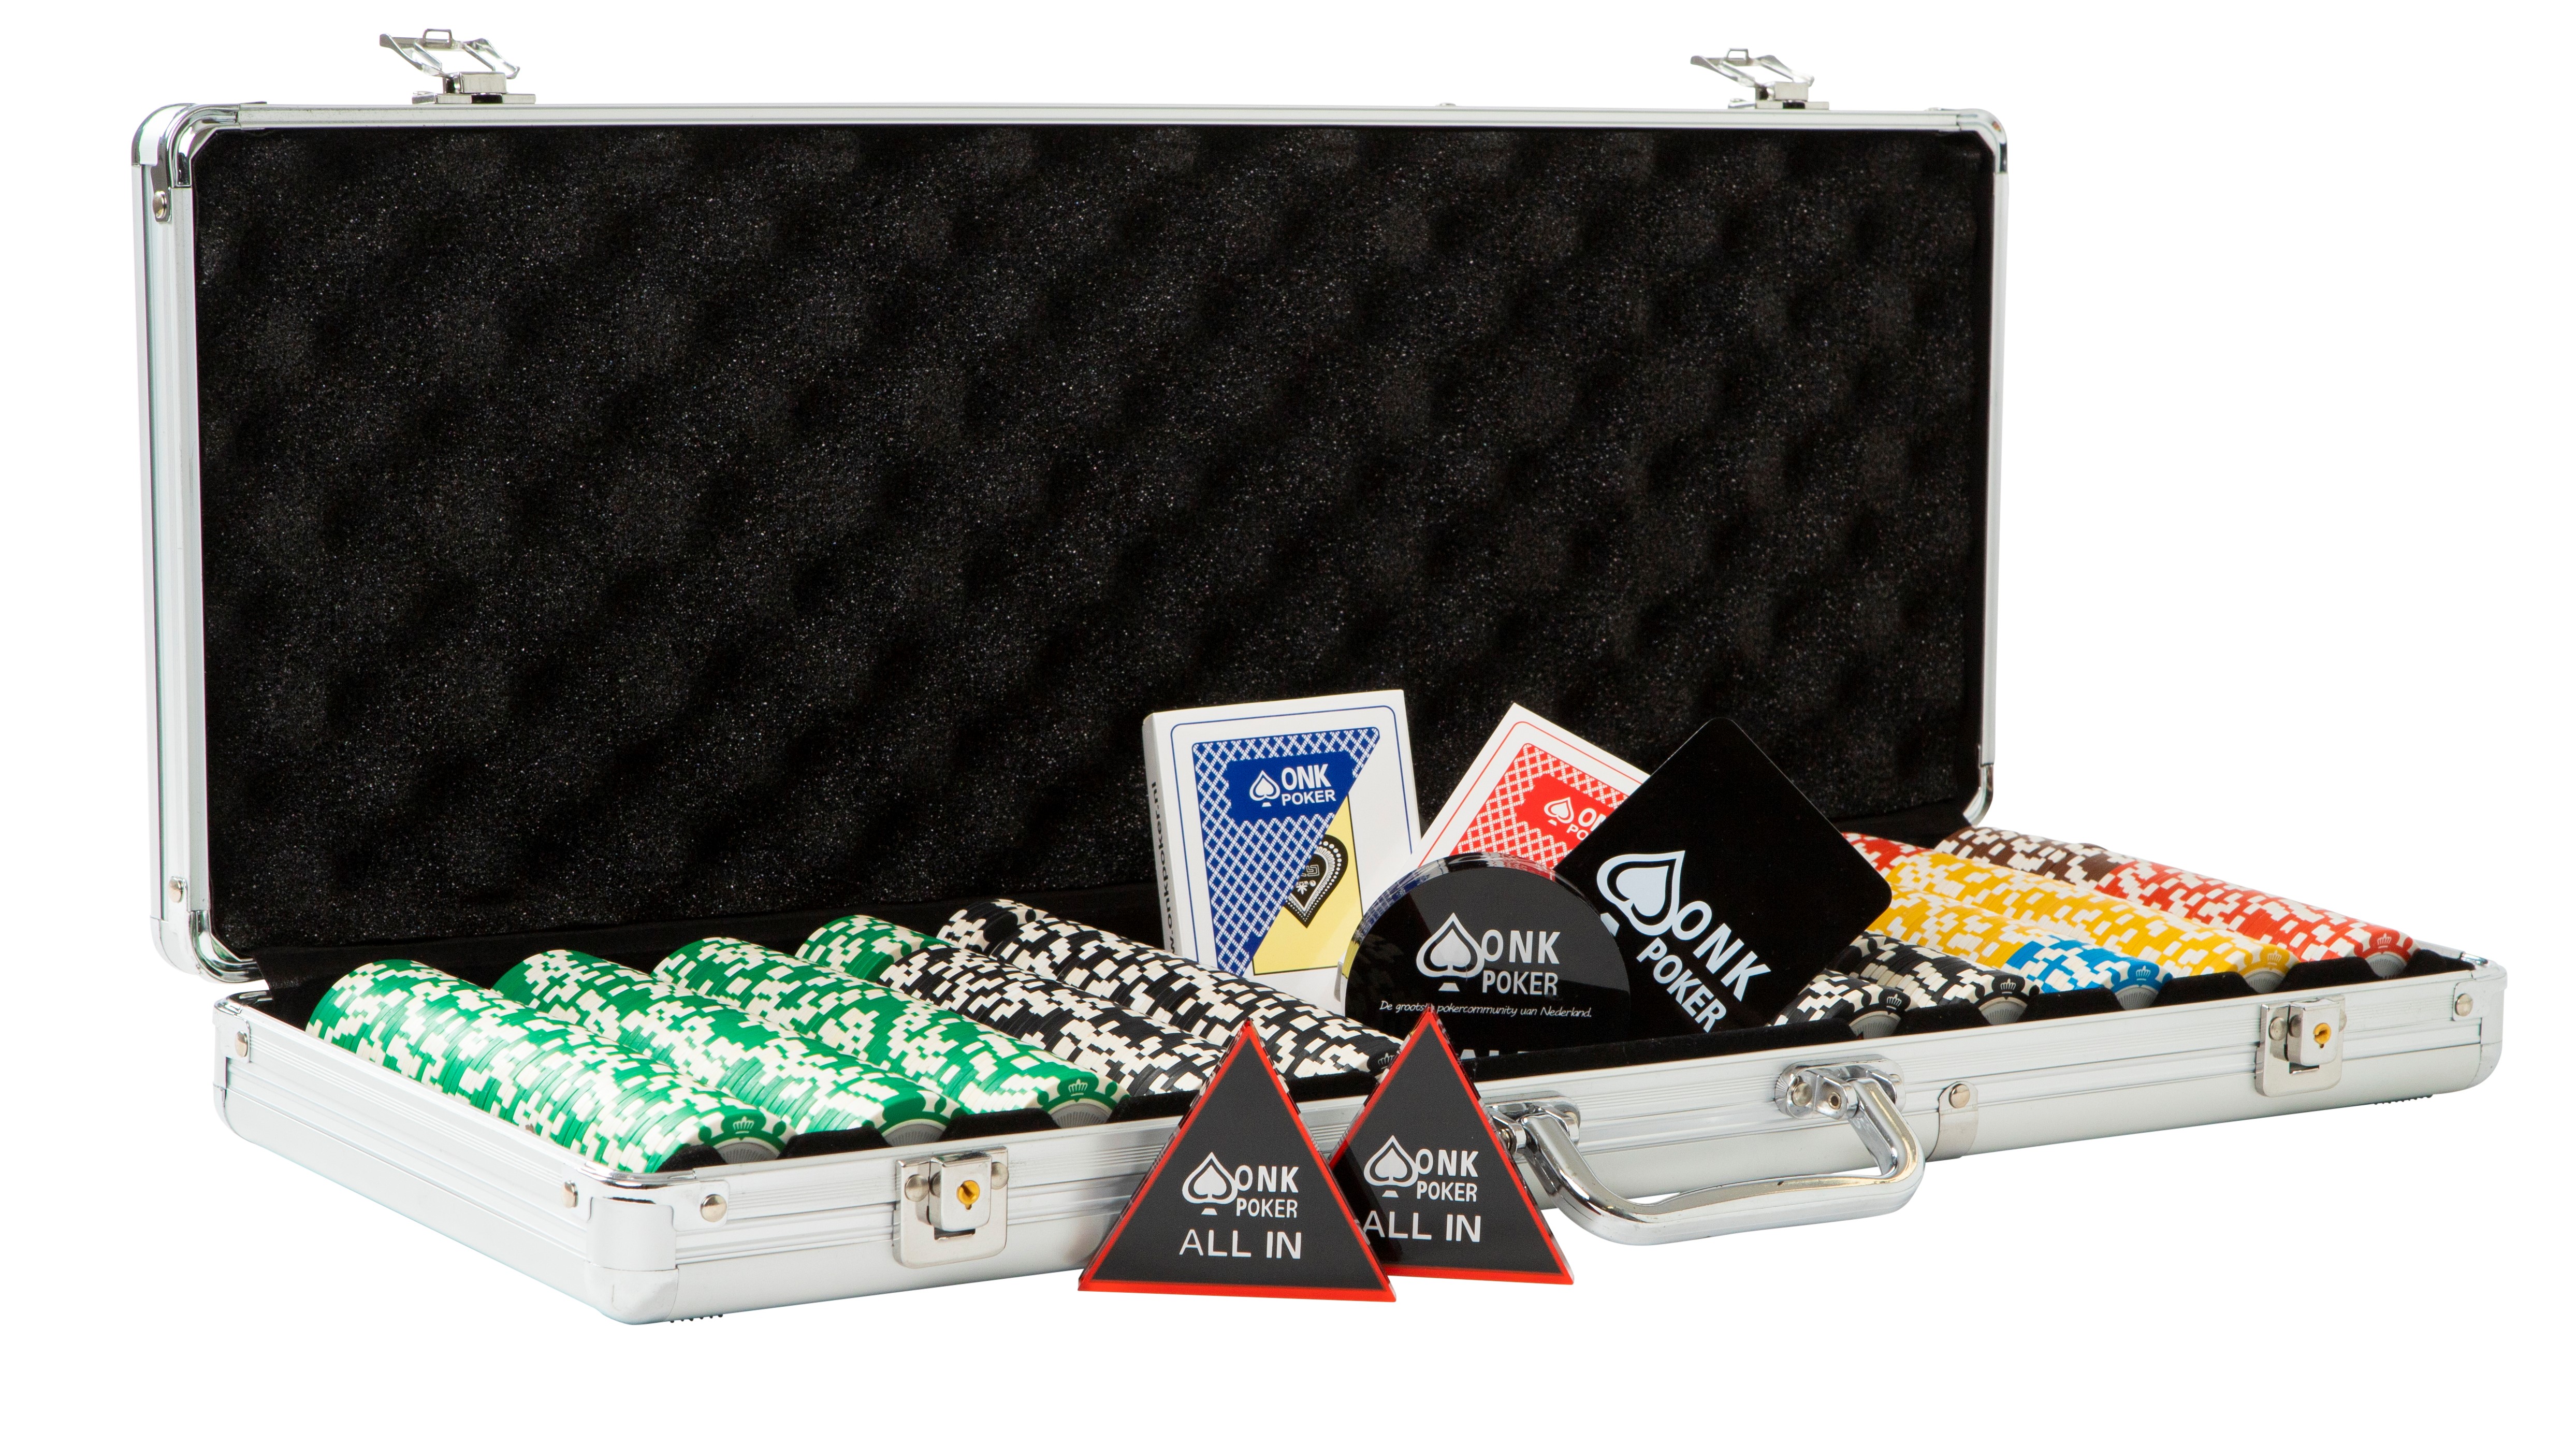 De Kamer riem Teken een foto Pokerkoffer kopen ✓ Complete koffer ONK Poker ✓ | ONK Poker